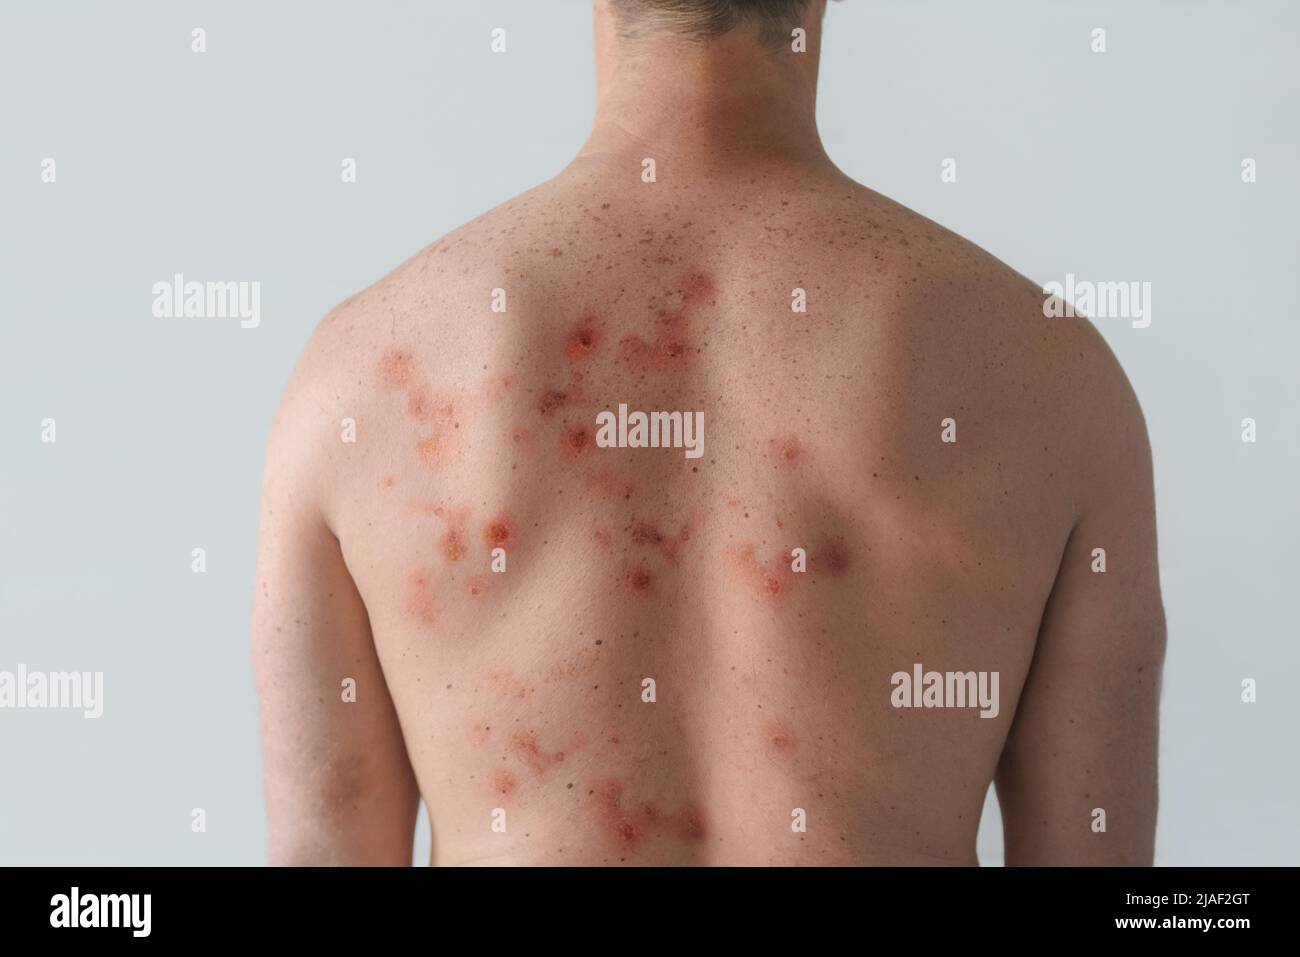 Männlicher Rücken durch Blasenausschlag aufgrund von Monkeypox oder einer anderen Virusinfektion auf weißem Hintergrund betroffen Stockfoto